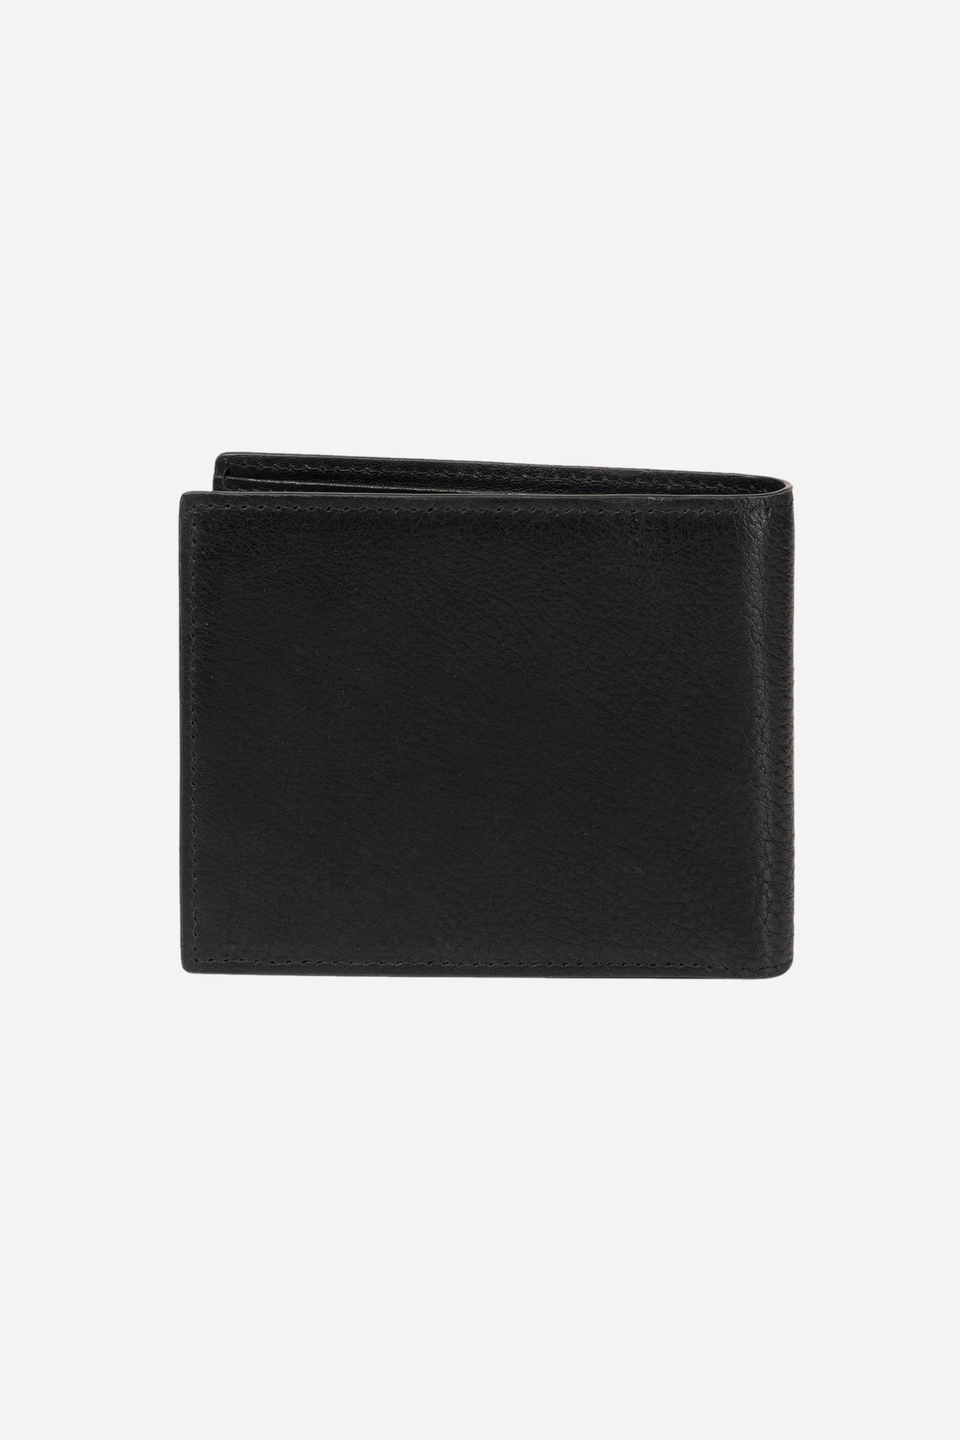 Men's leather wallet - Paulo | La Martina - Official Online Shop